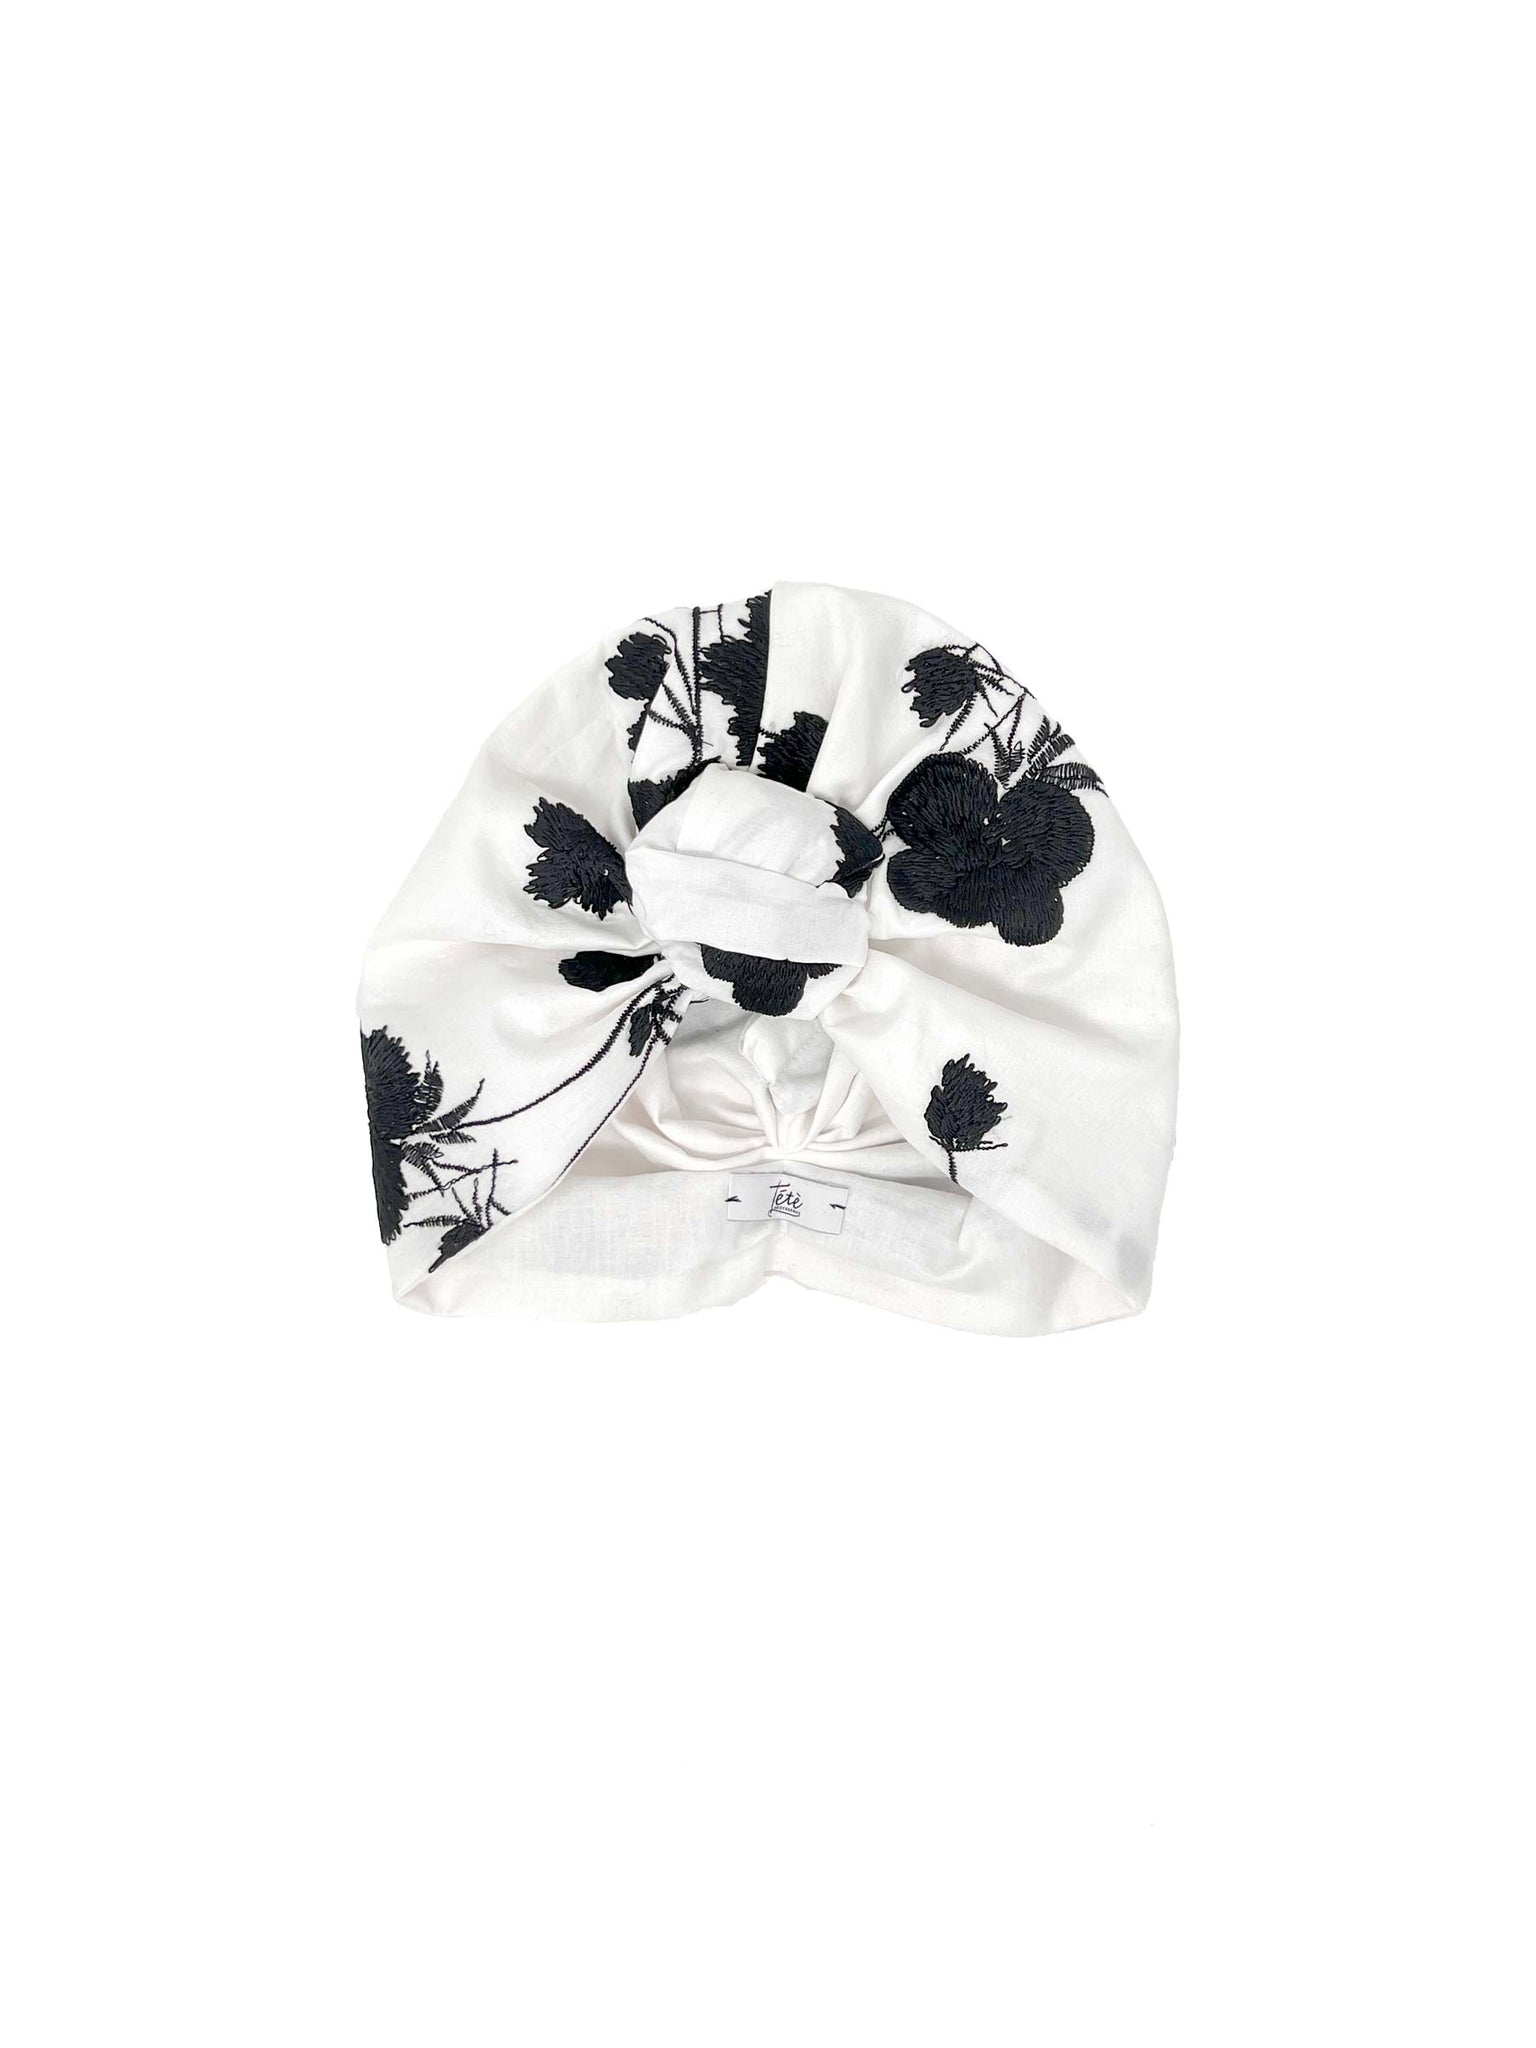 Turbante in cotone bianco con fiori neri ricamati in cotone